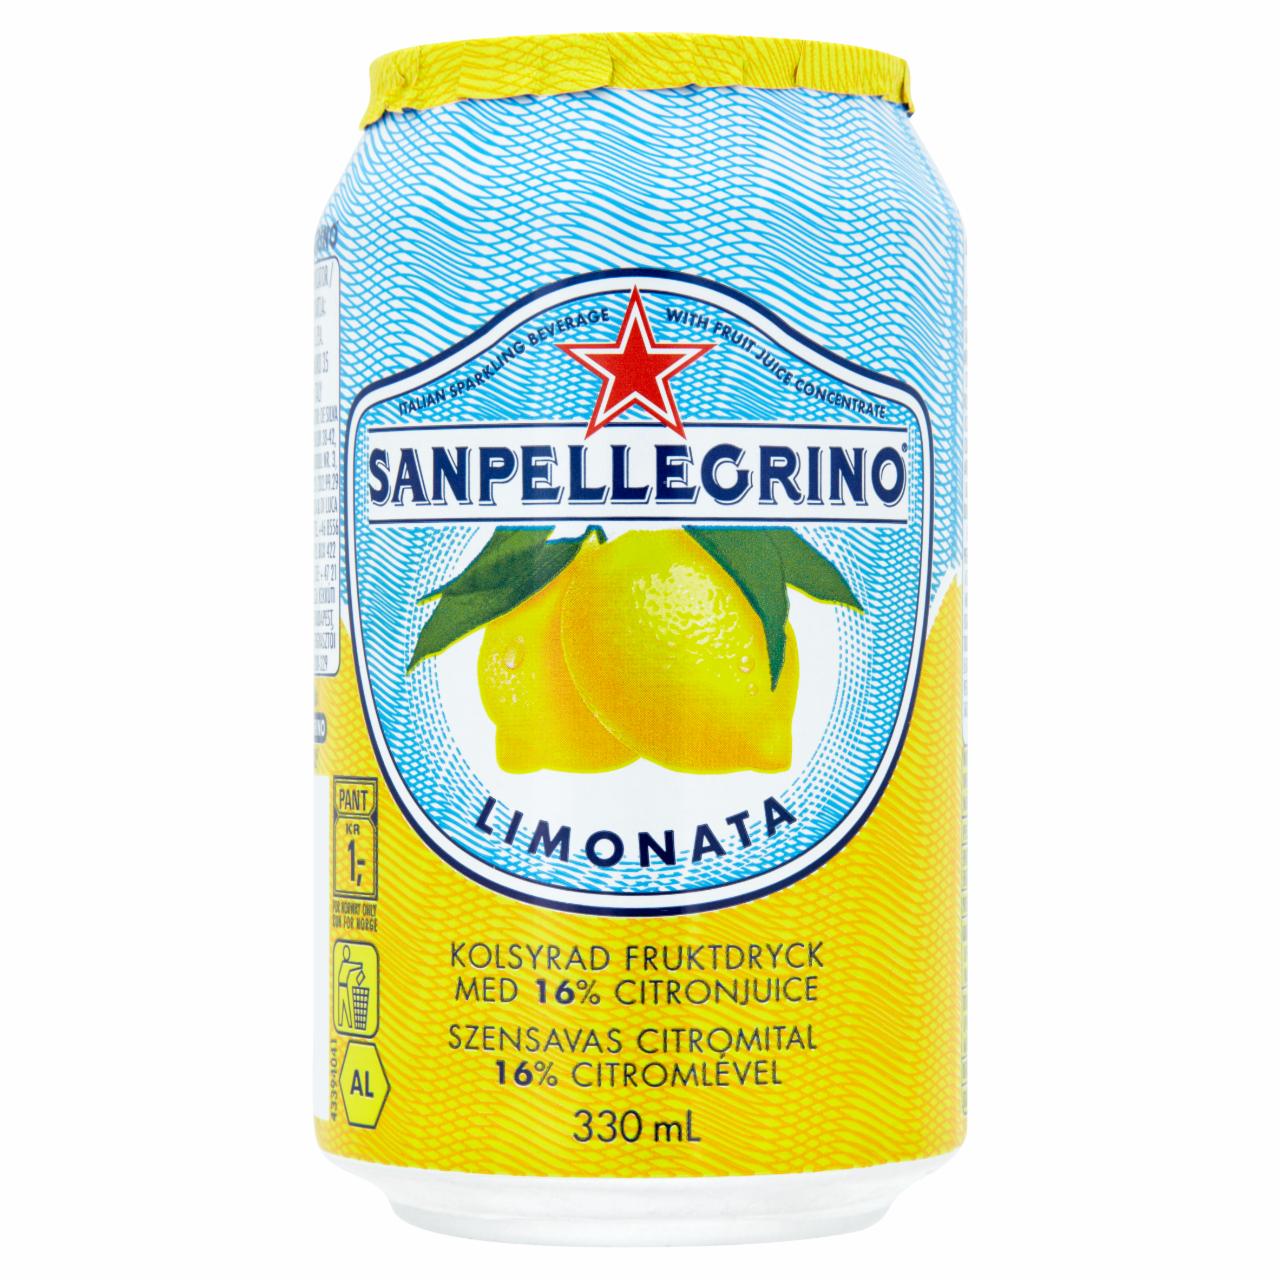 Képek - Sanpellegrino Limonata szénsavas citromital 330 ml